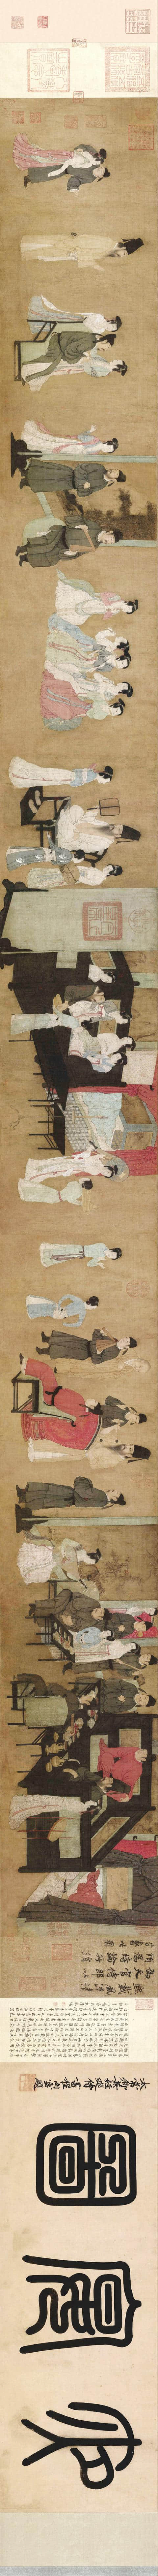 中国十大传世名画 人物工笔画的传神经典之作《韩熙载夜宴图》